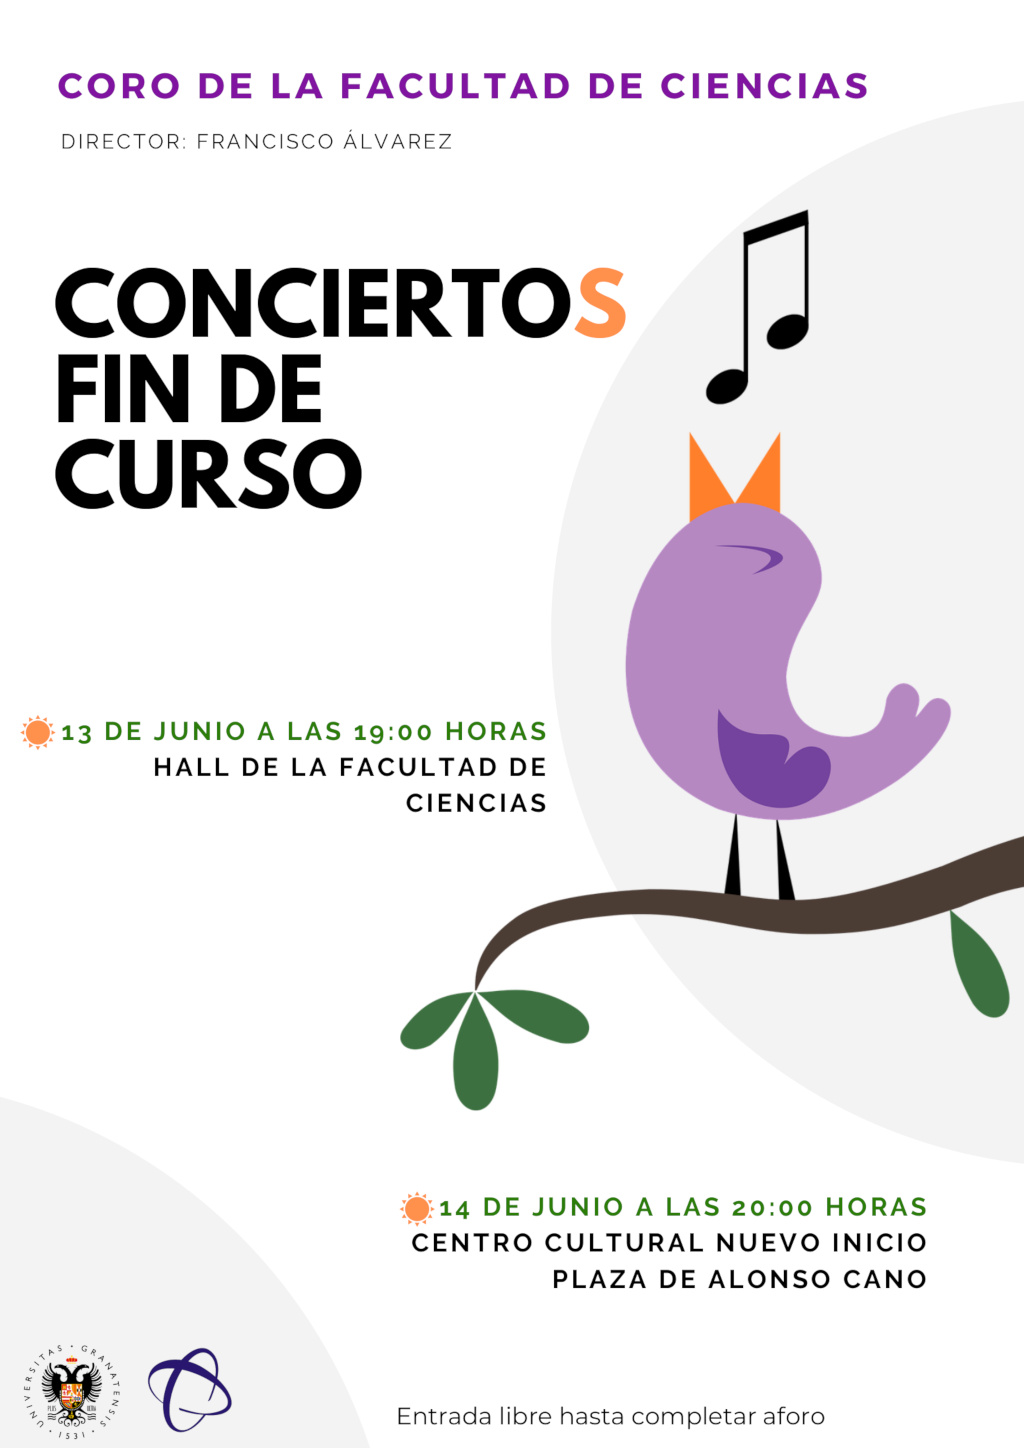 Conciertos de Fin de Curso 2018/2019 del Coro de la Facultad de Ciencias